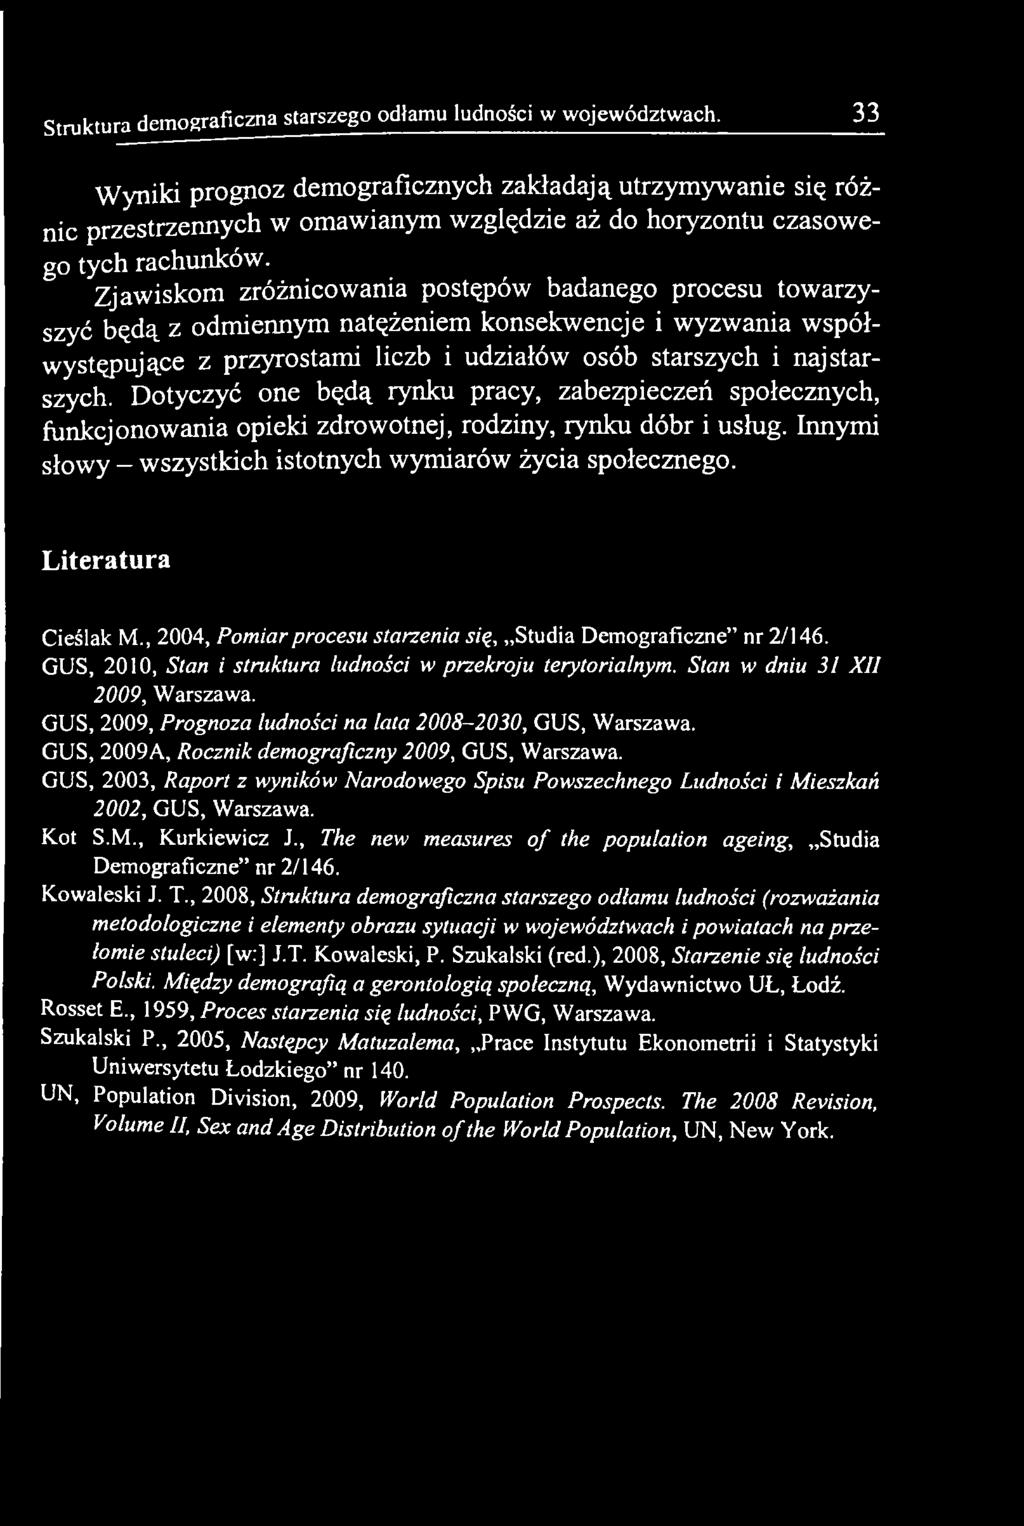 Literatura Cieślak M., 2004, Pomiar procesu starzenia się, Studia Demograficzne nr 2/146. GUS, 2010, Stan i struktura ludności w przekroju terytorialnym. Stan w dniu 31 XII 2009, Warszawa.